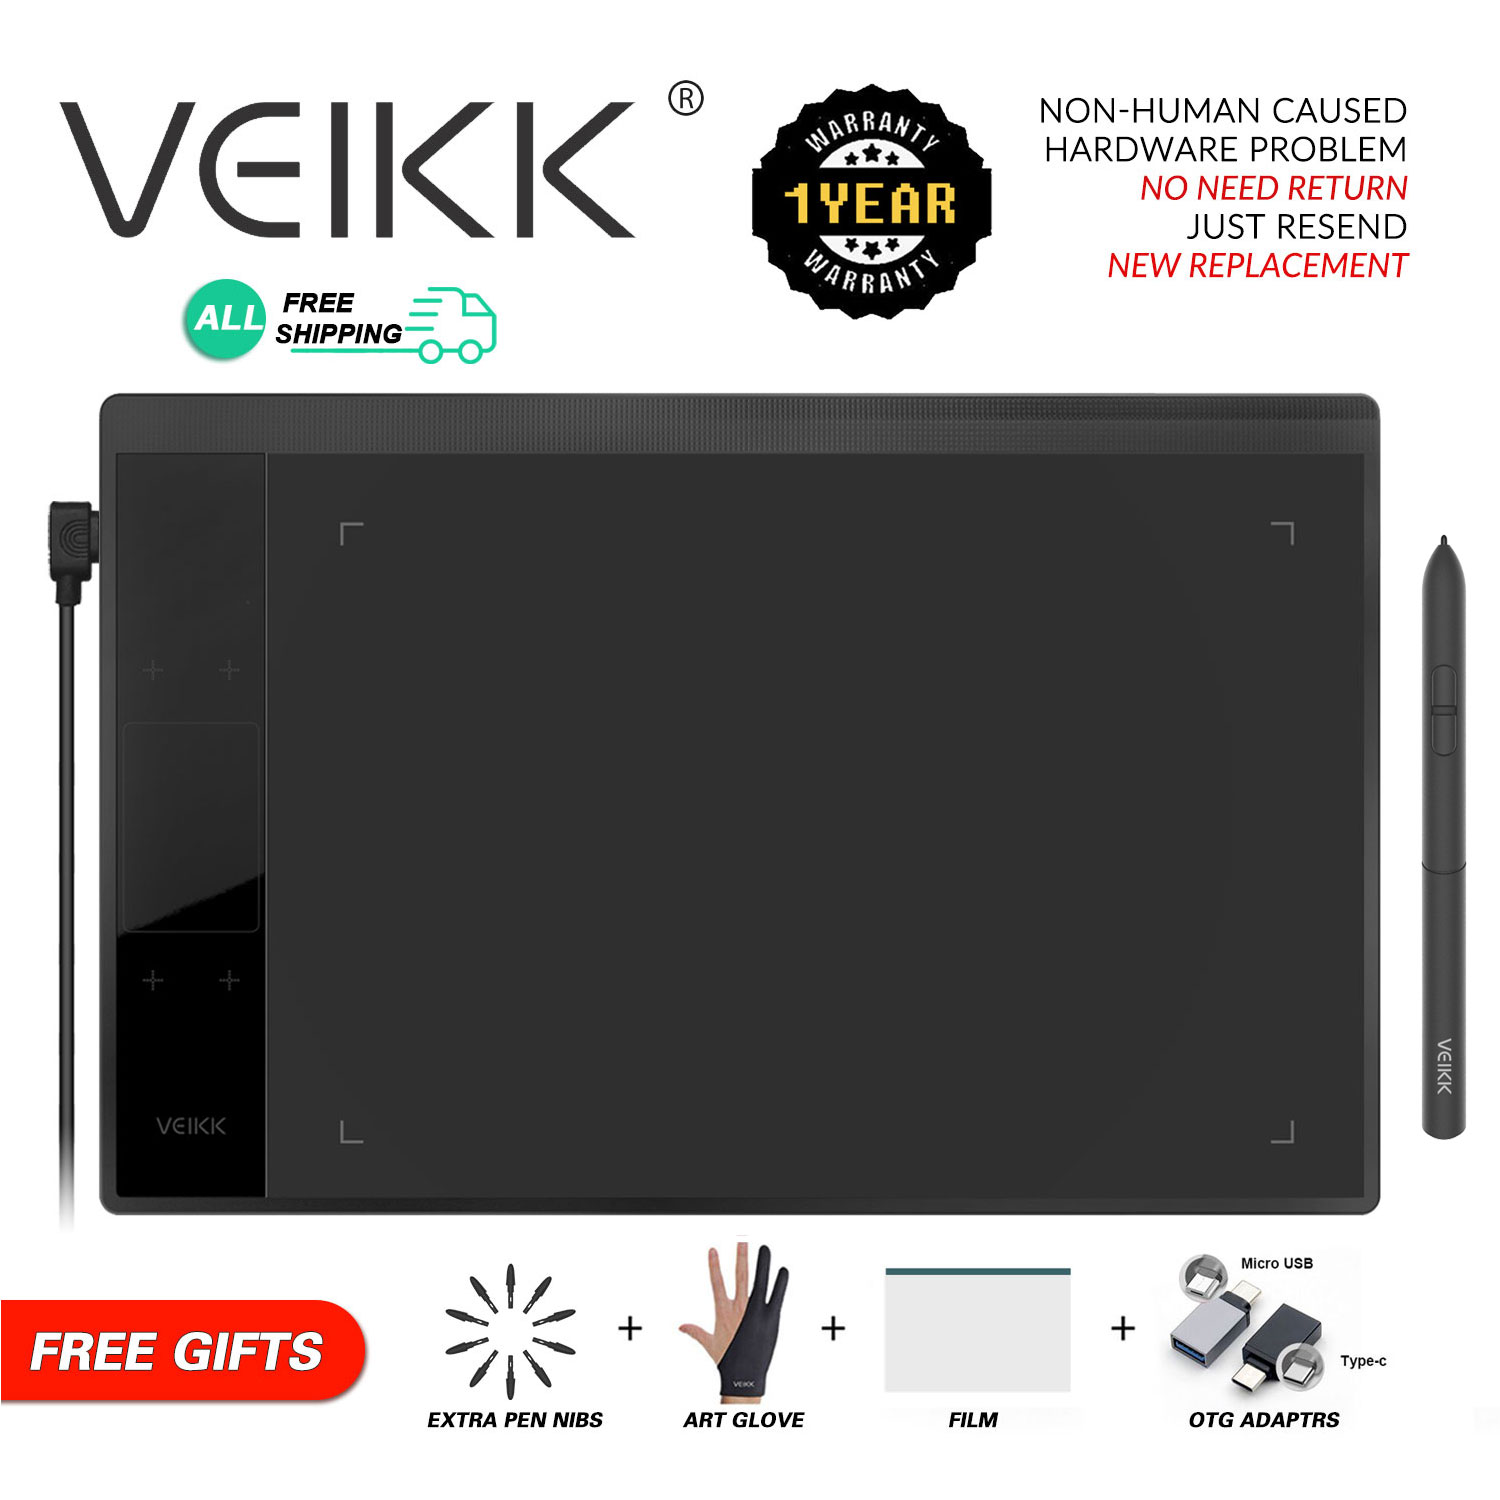 VEIKK A30V2แท็บเล็ตวาดรูปกราฟิก,กระดานไร้แบตเตอรี่8192ระดับพื้นที่ใช้งาน10X6